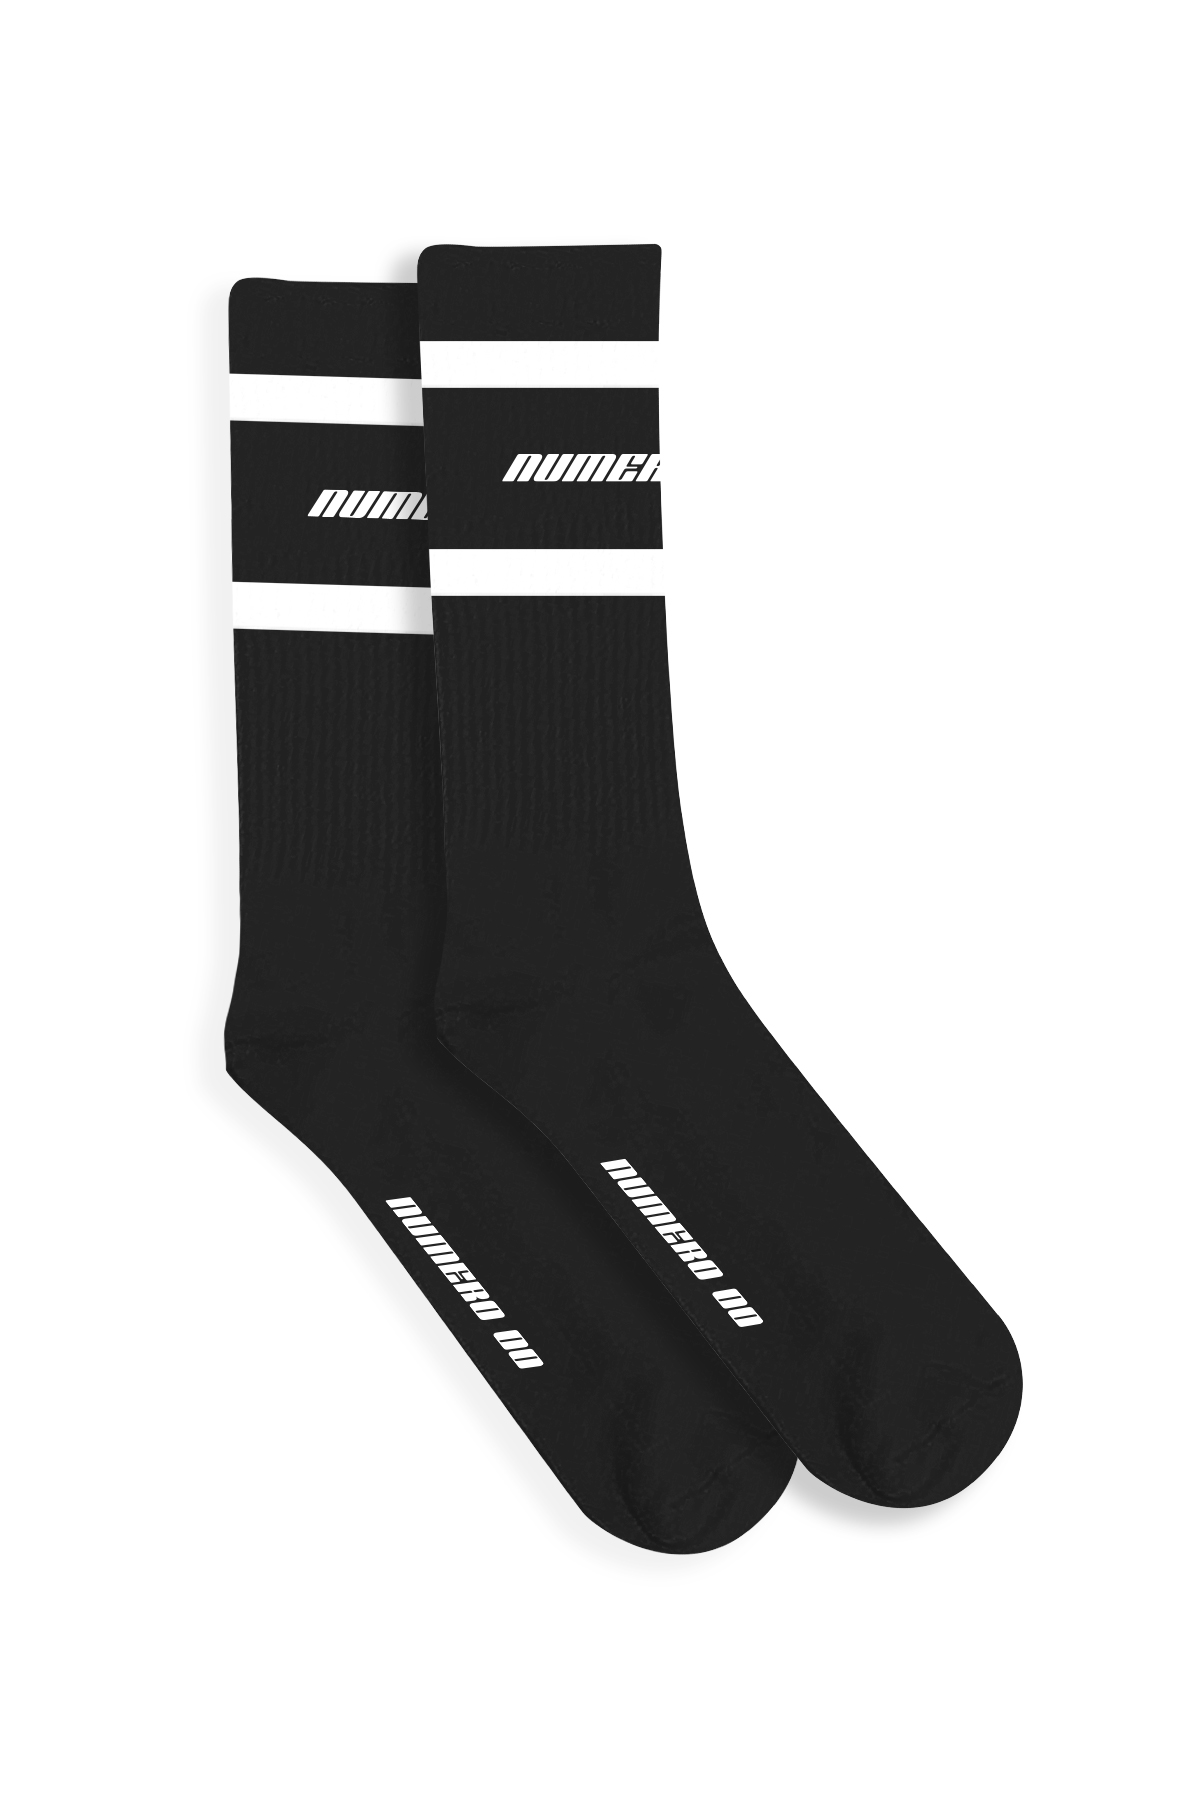 black socks 00 - Numero00